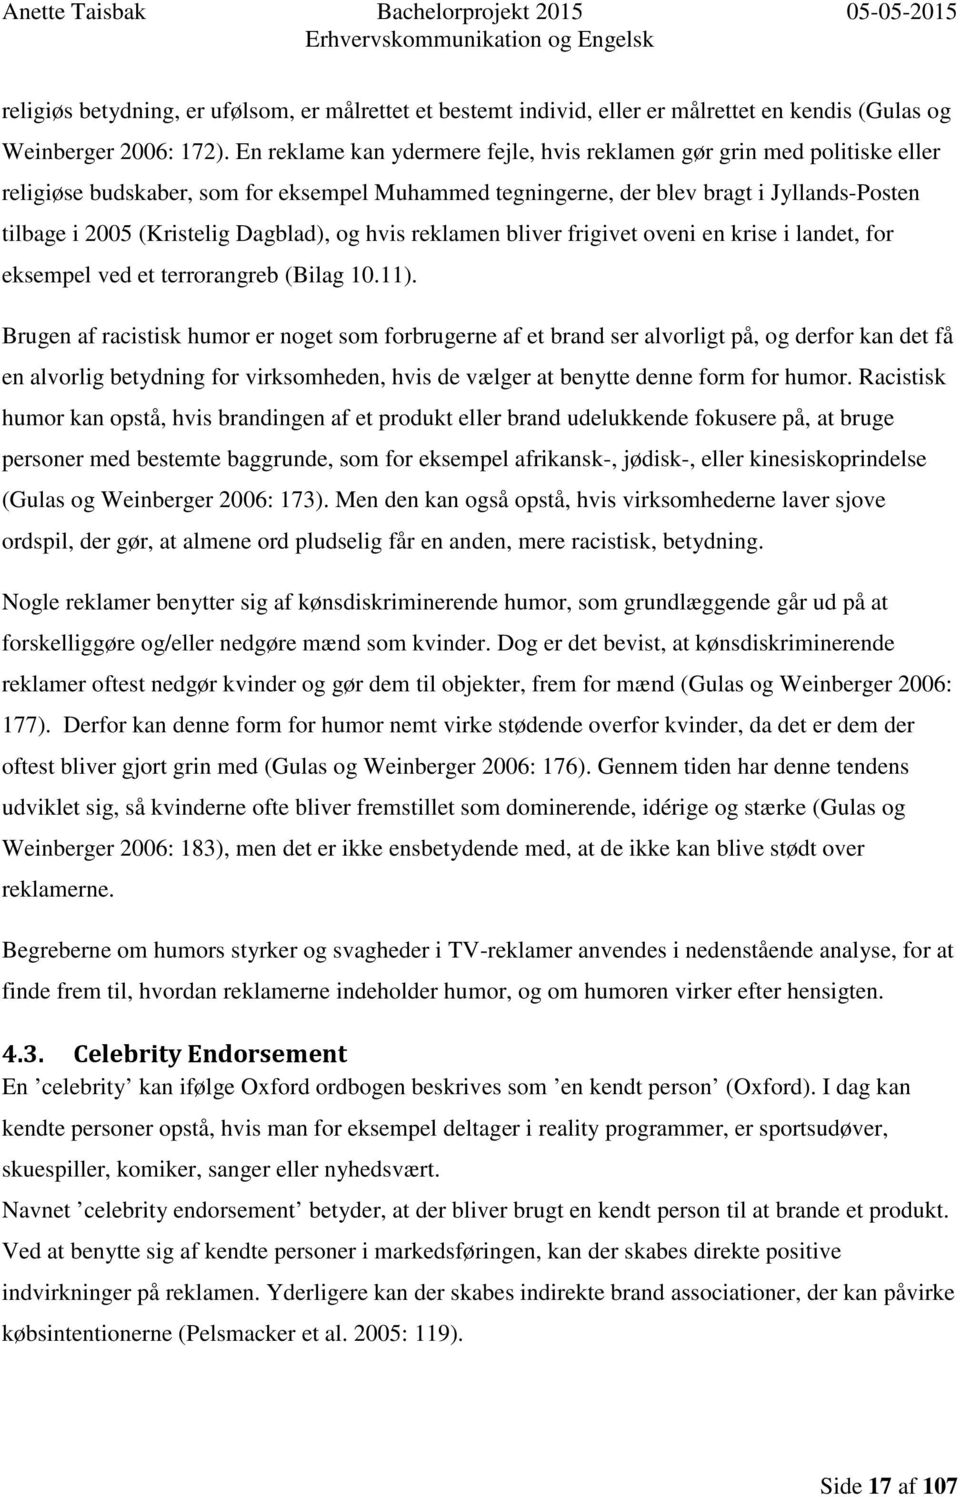 Humors betydning i danske TV-reklamer - PDF Free Download